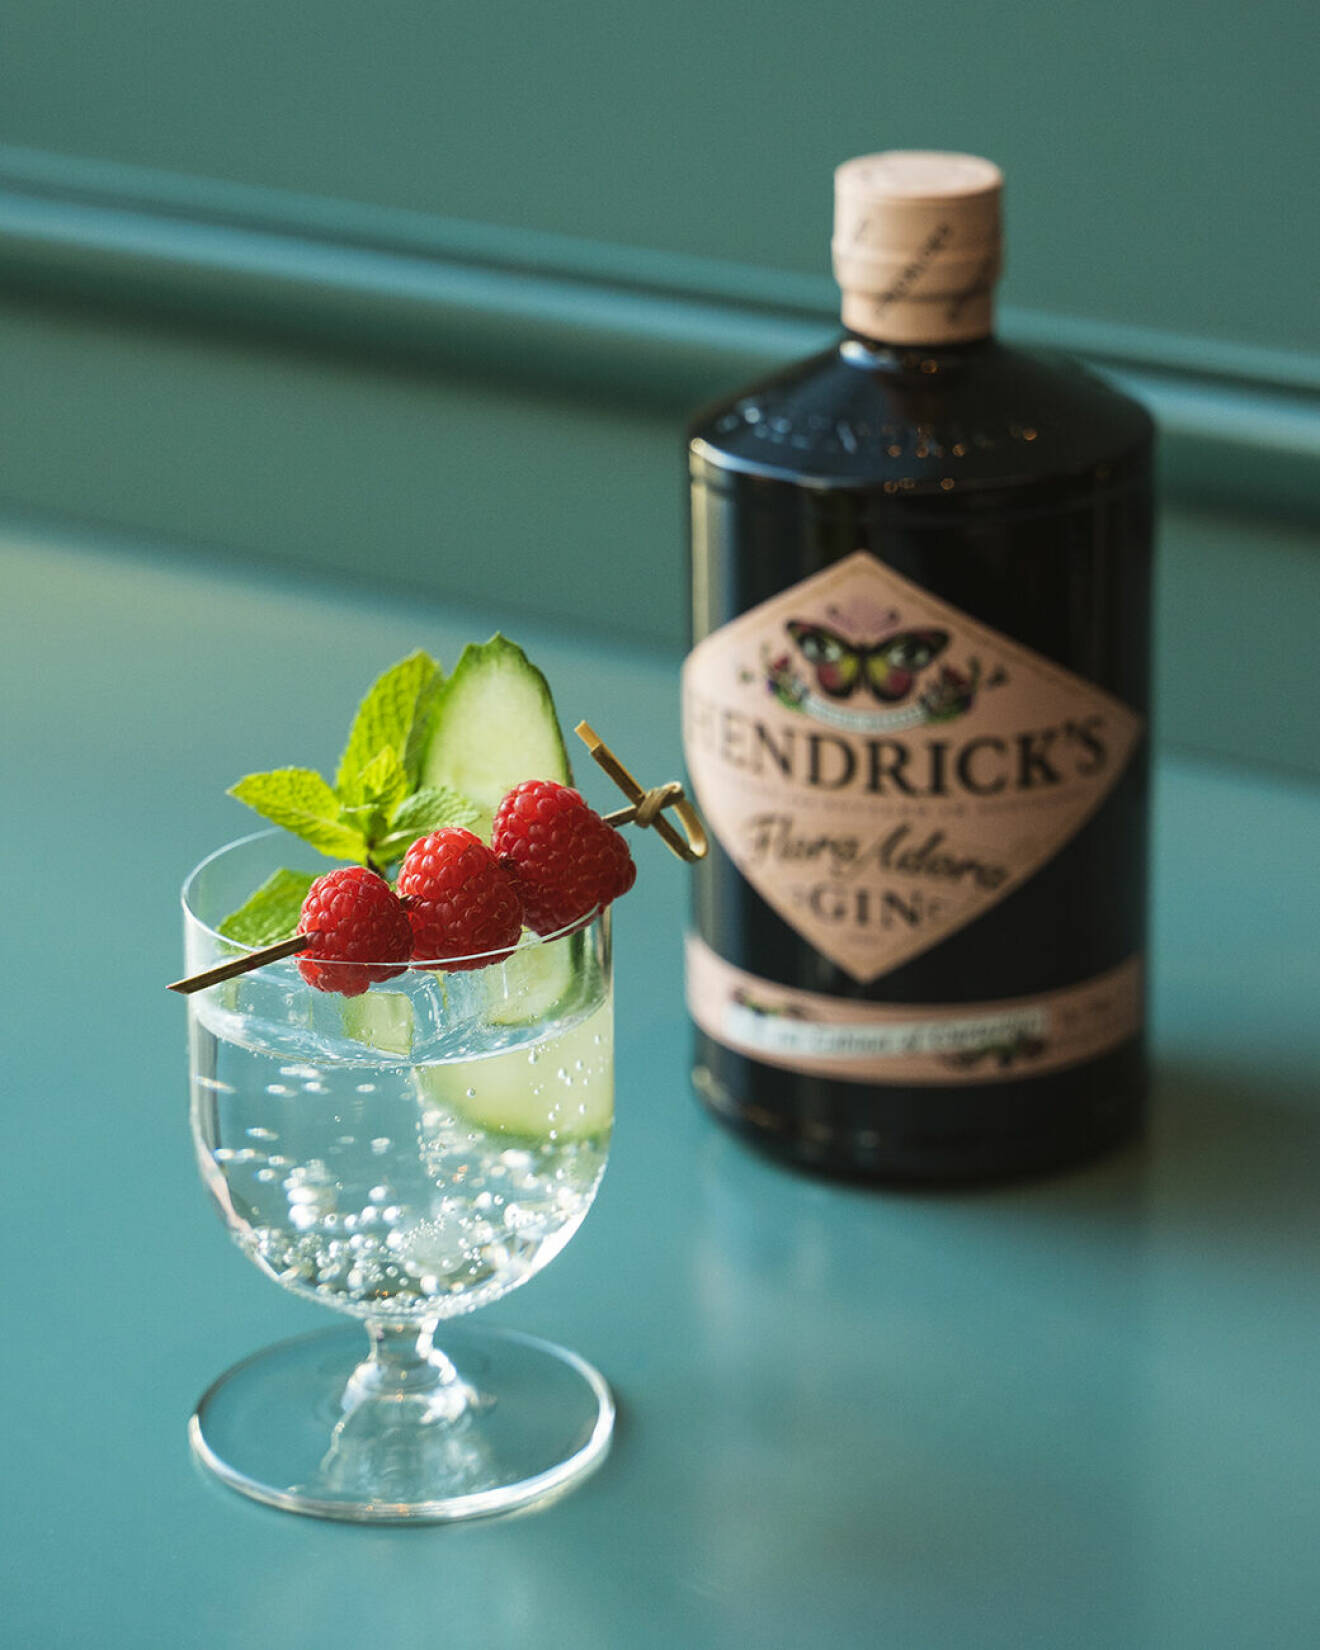 Adora elderflower är en gin och tonic med somrig smak av fläder